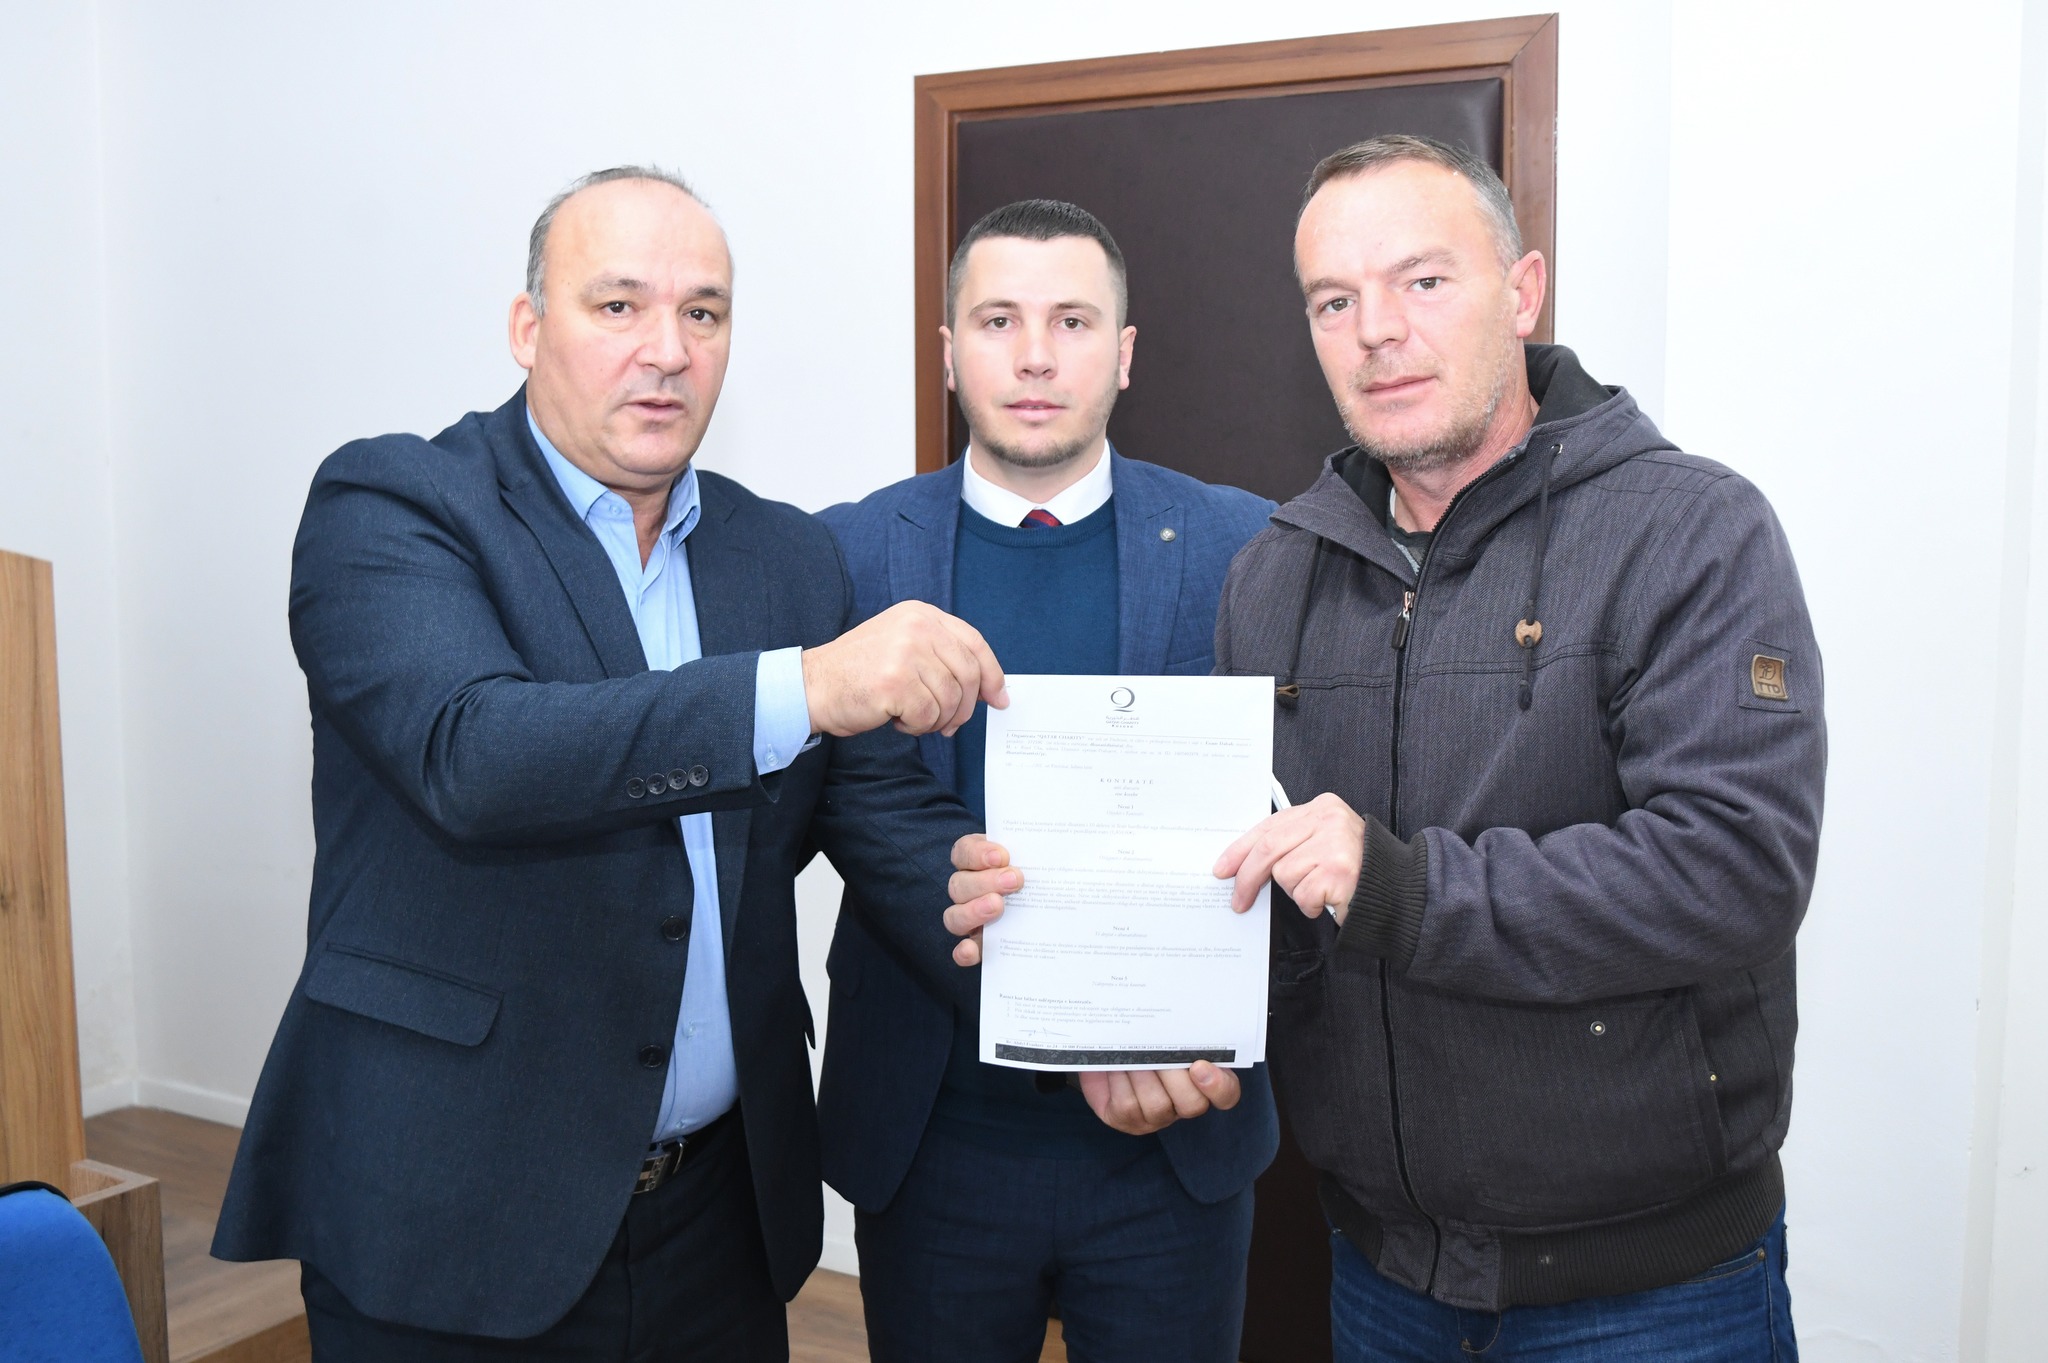  Komuna e Podujevës shpërndau kontratat për përfituesit fermerë në profile të ndryshme